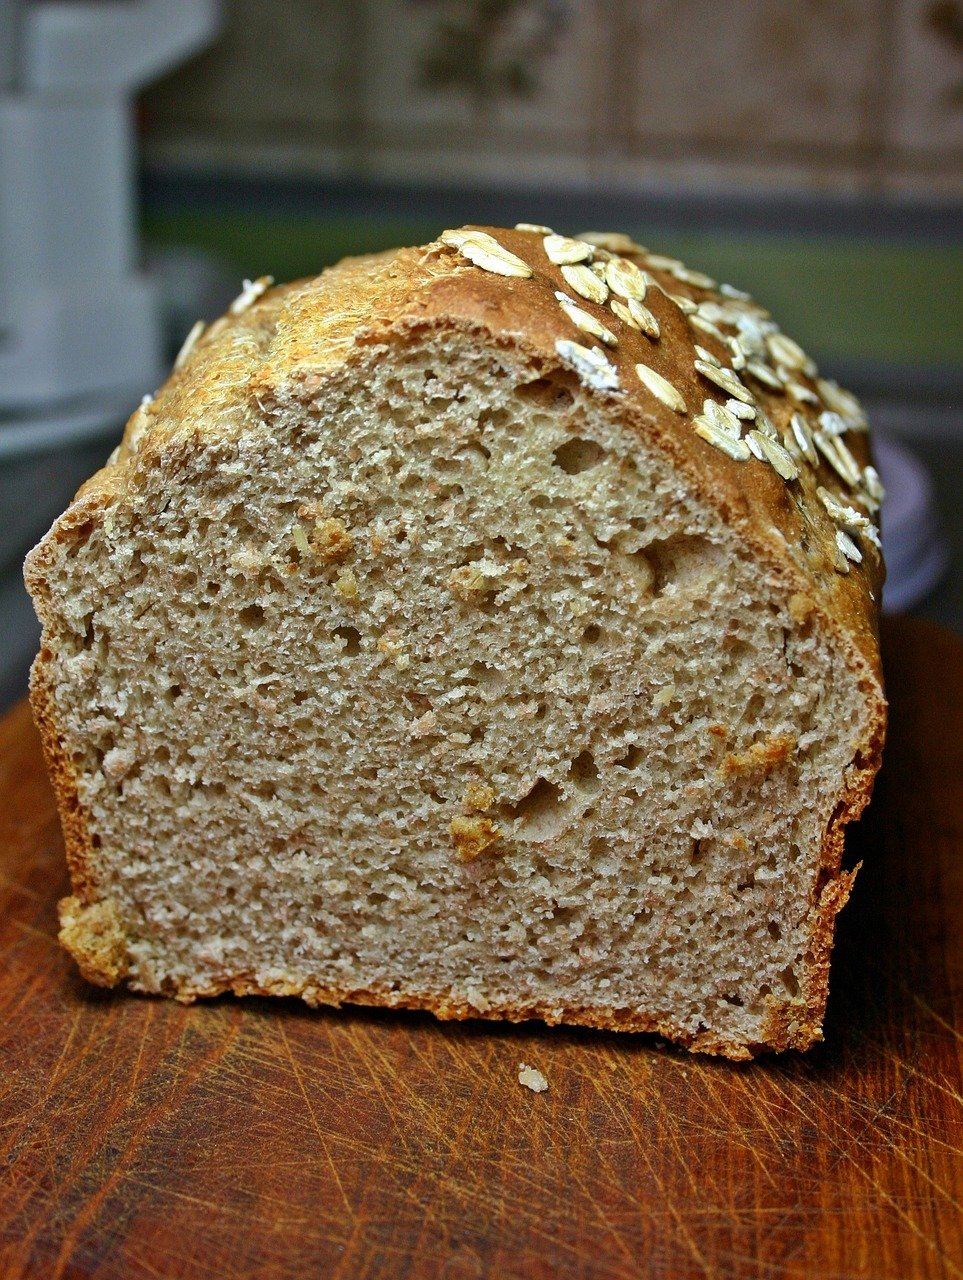 Samodzielnie wykonany chleb.